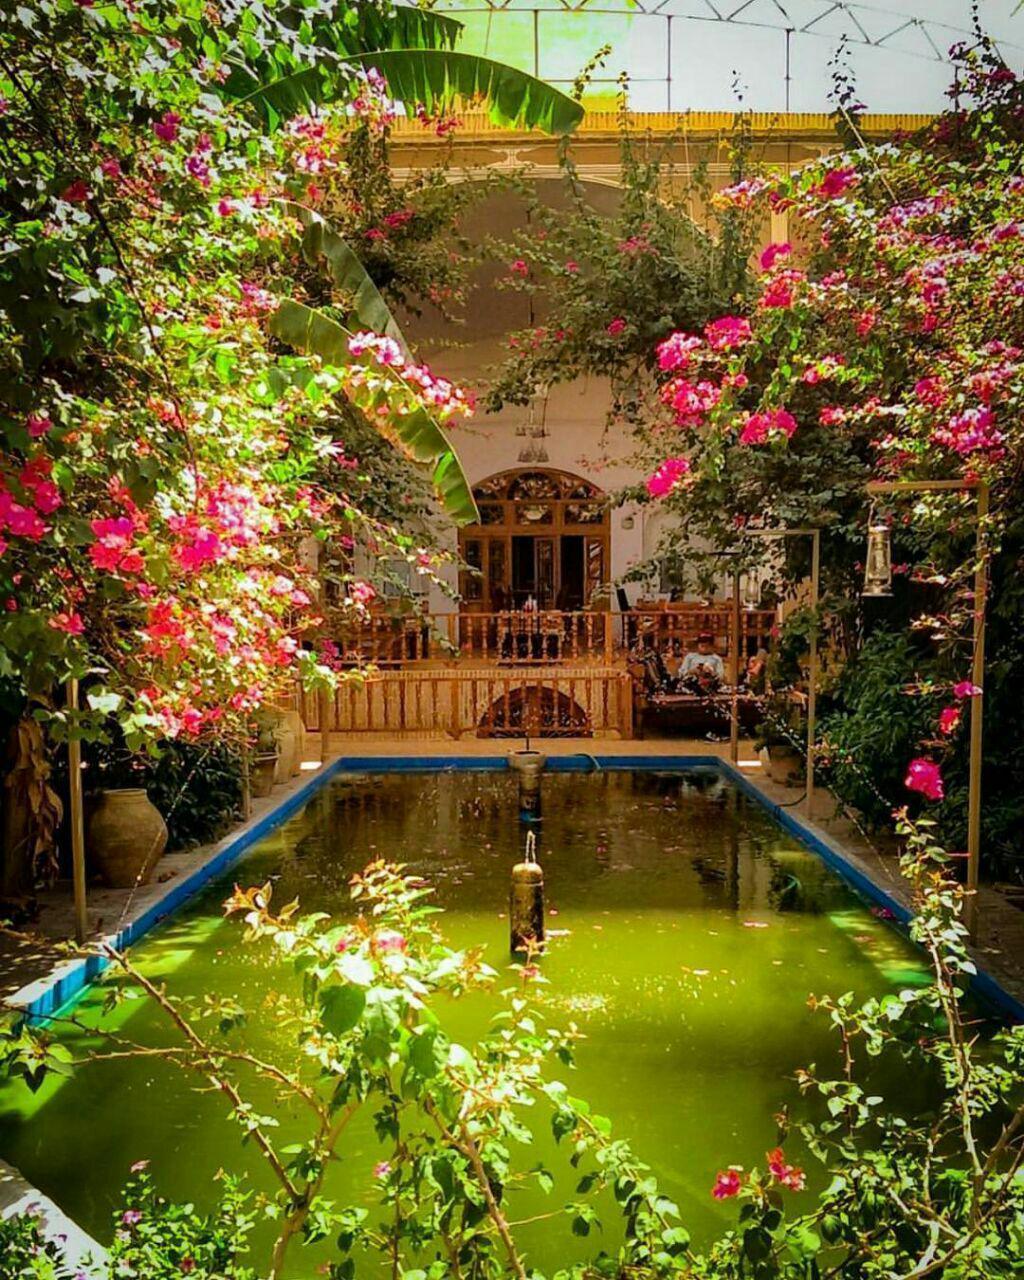 هتل کهن کاشانه یزد همه خانه های تاریخی ایران یه طرف محوطه این هتل یه طرف **abdolla**